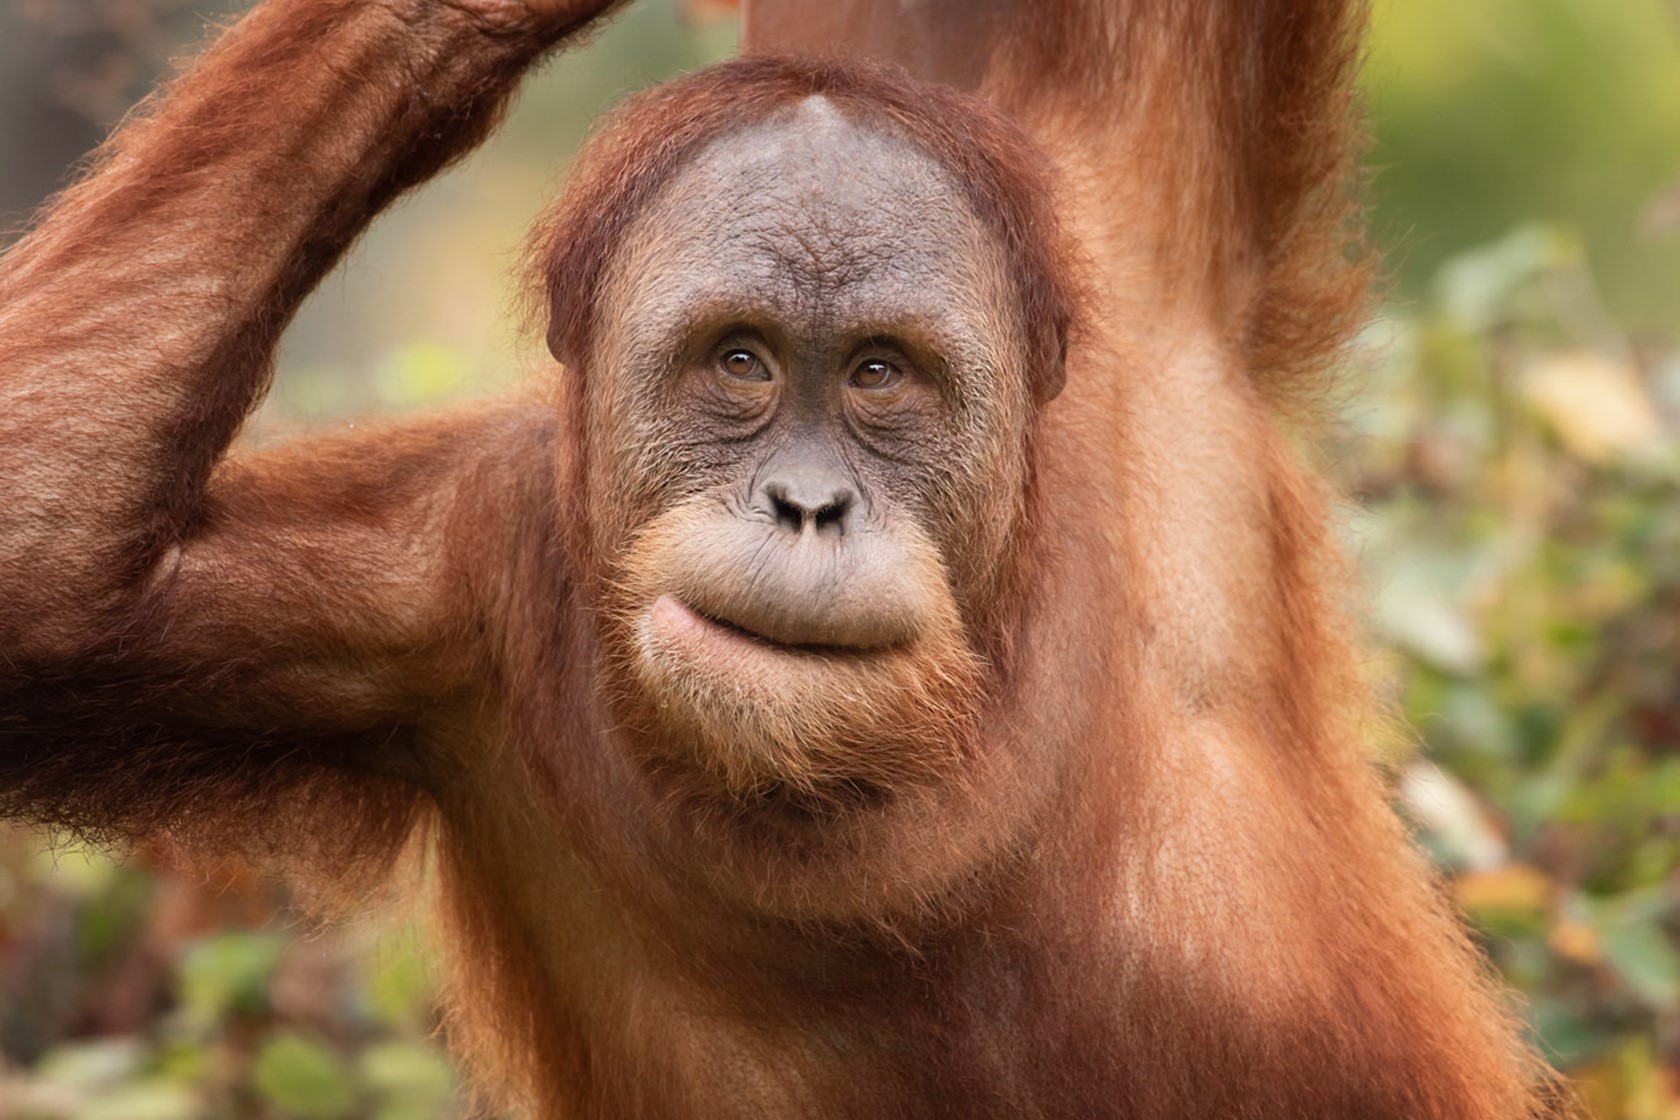 Sumatran orangutan climbs at Jersey Zoo